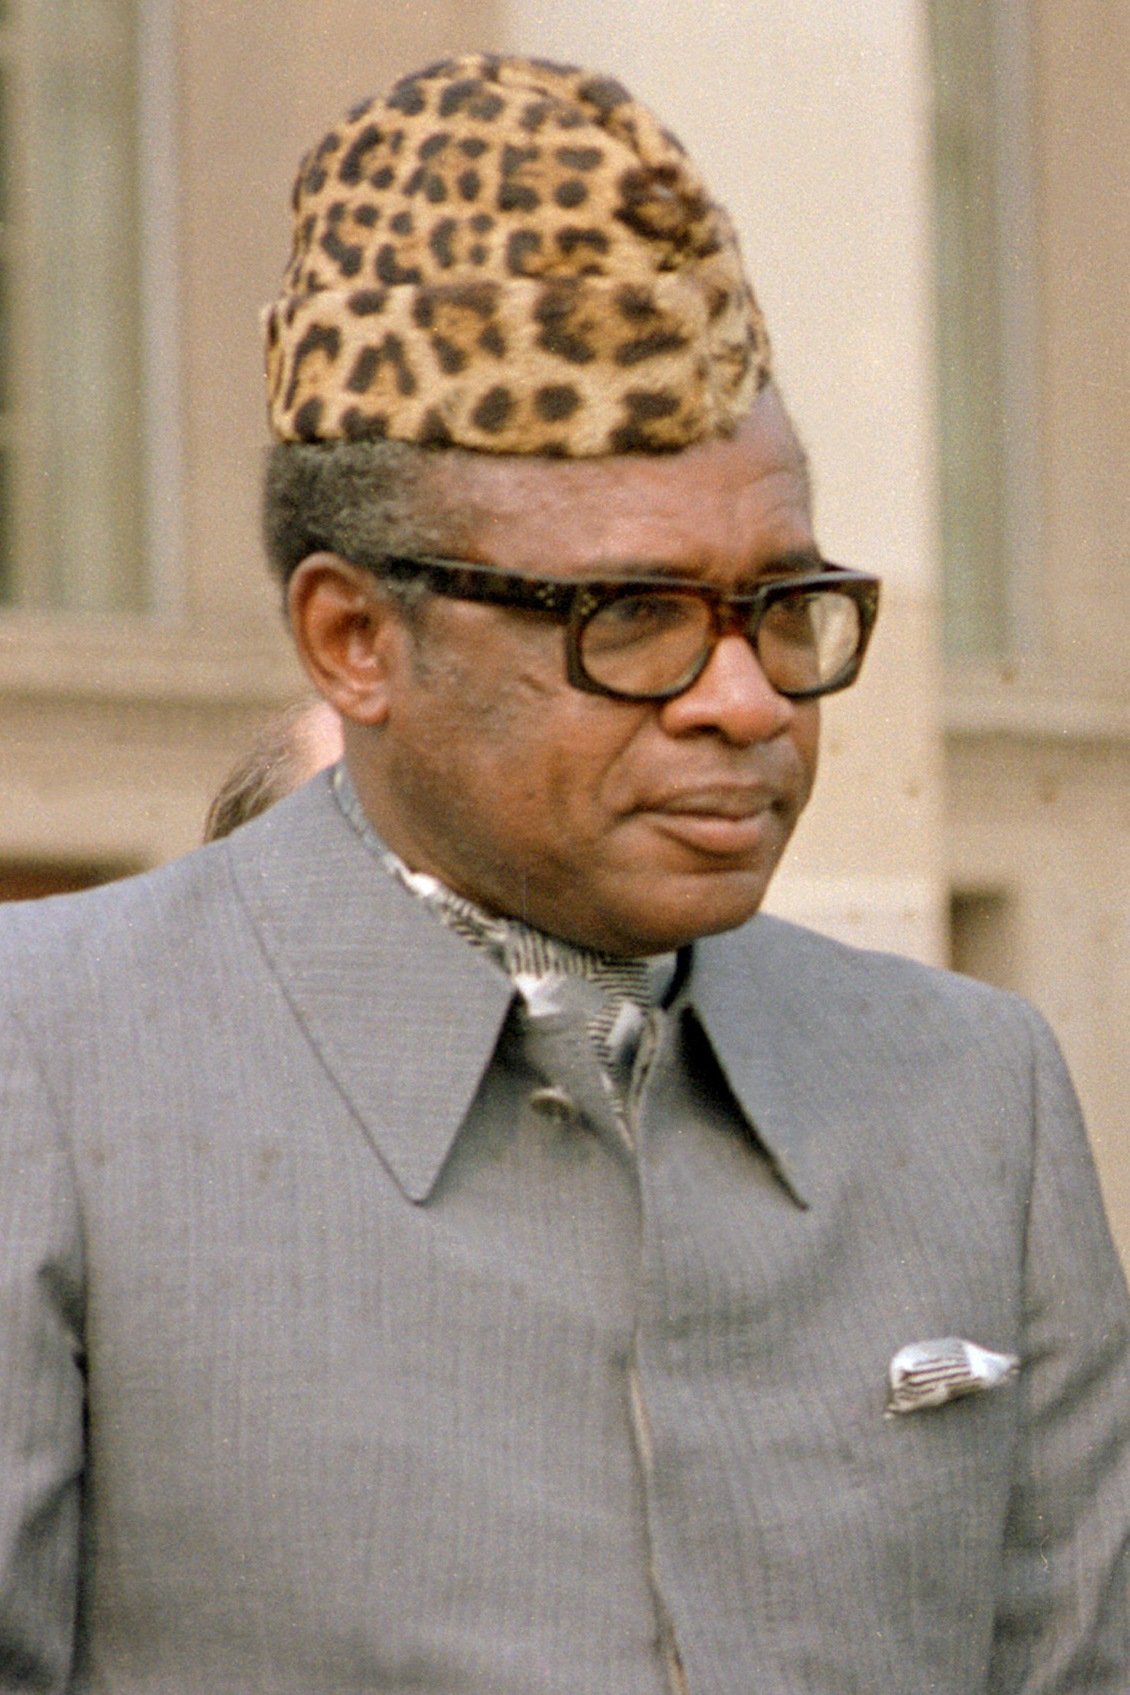 O ditador do Congo — quer dizer, Zaire — Mobutu Sese Seko